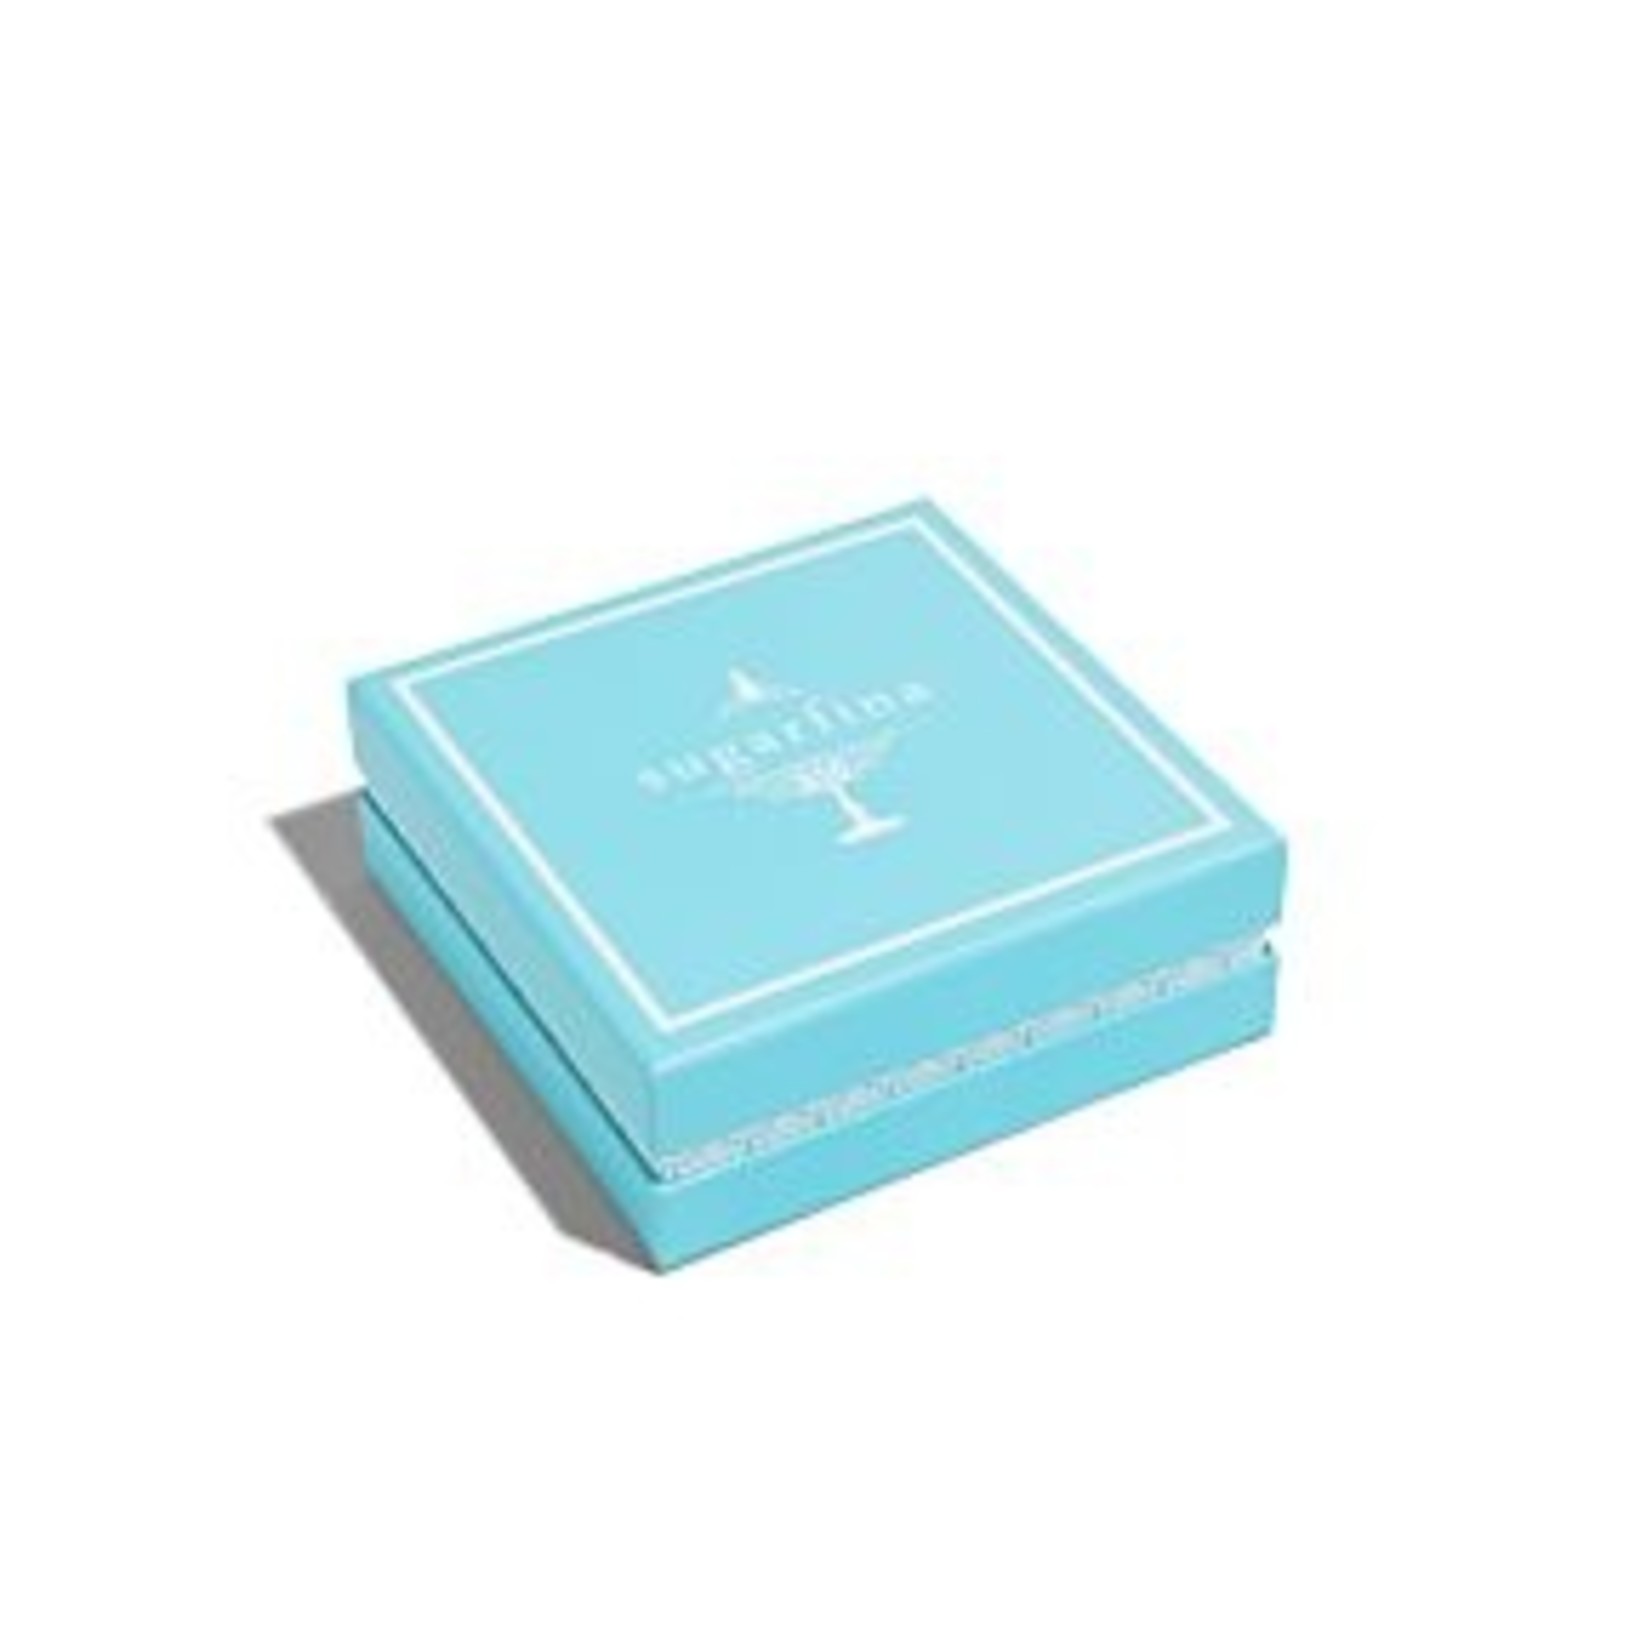 SUGARFINA SUGARFINA Bento Box 4 Piece - Aqua & White (DYO)